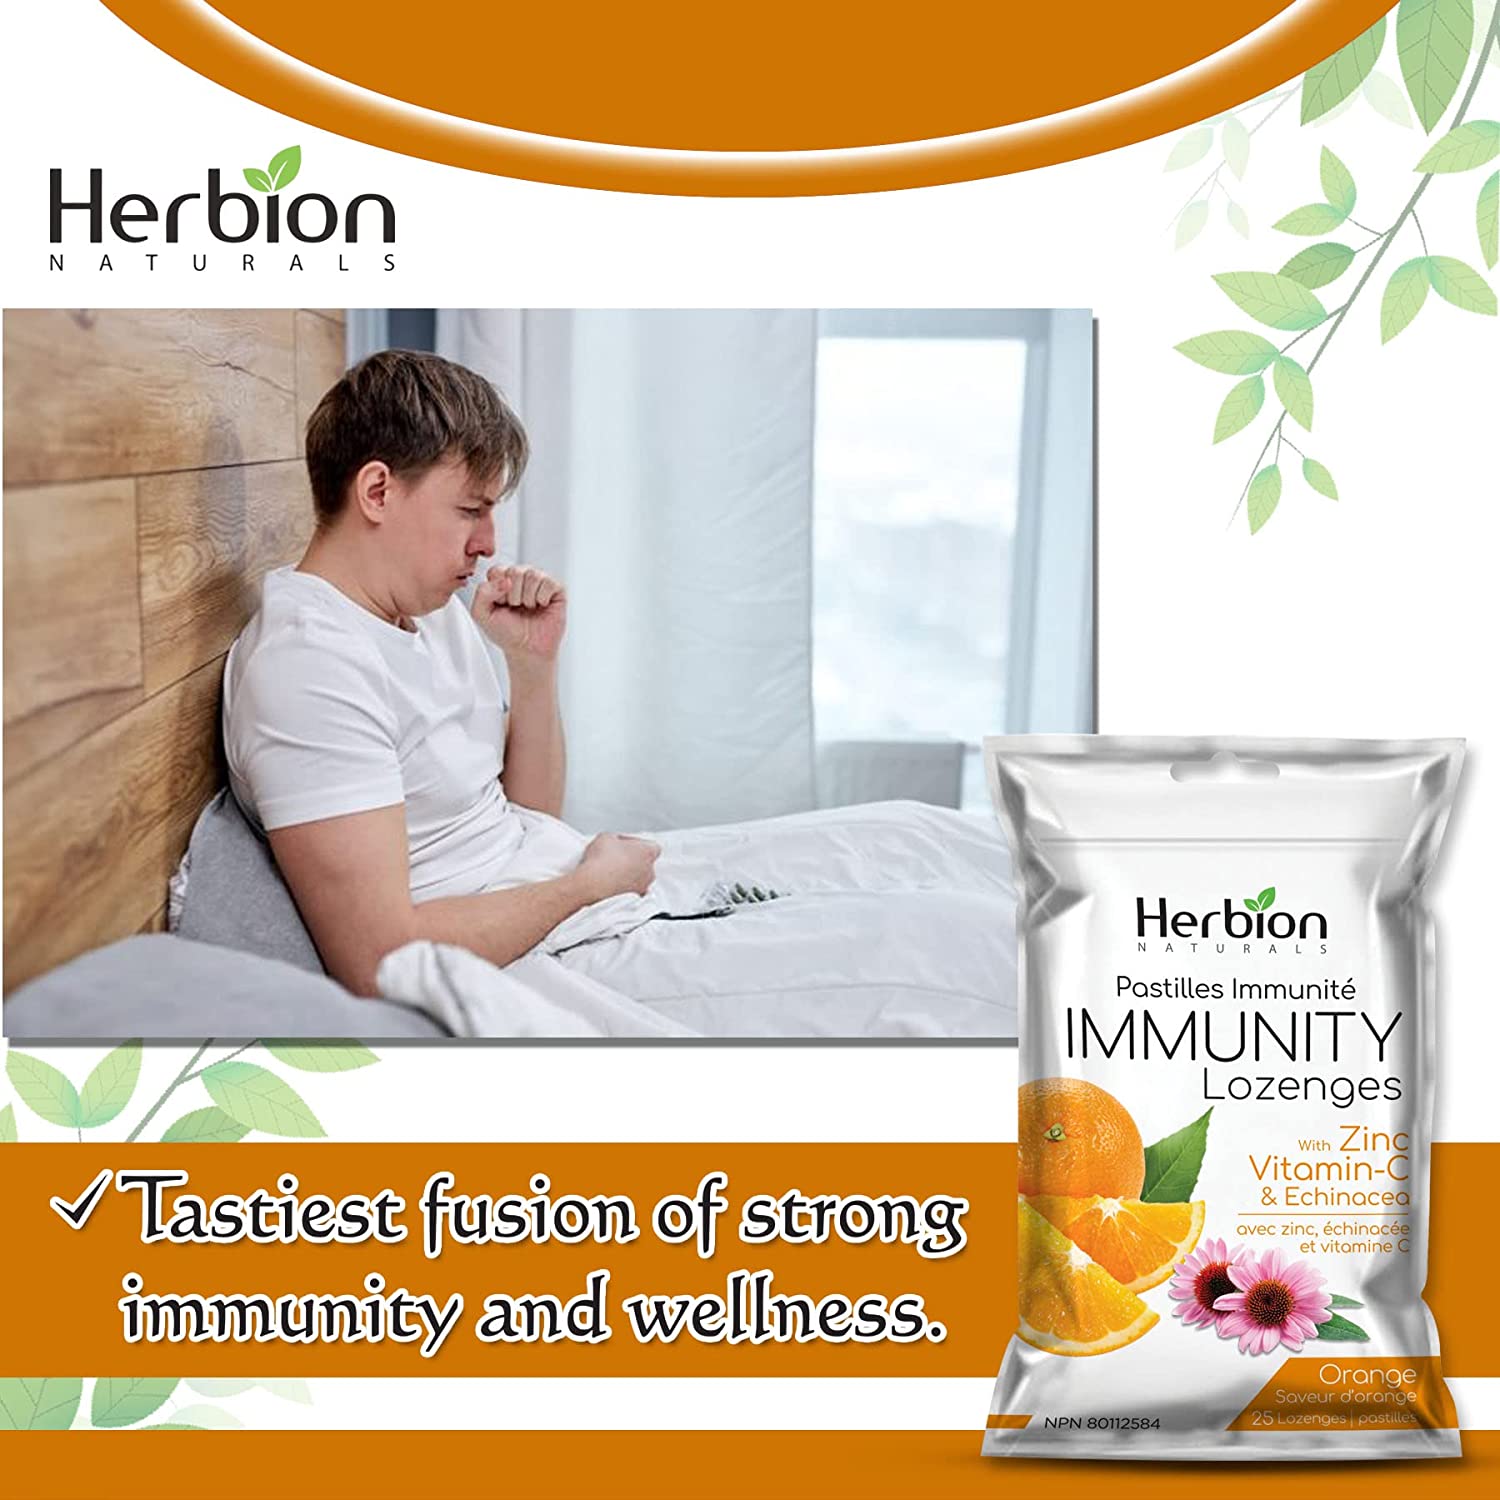 Herbion Immunity Lozenge 25 Lozenges / Orange